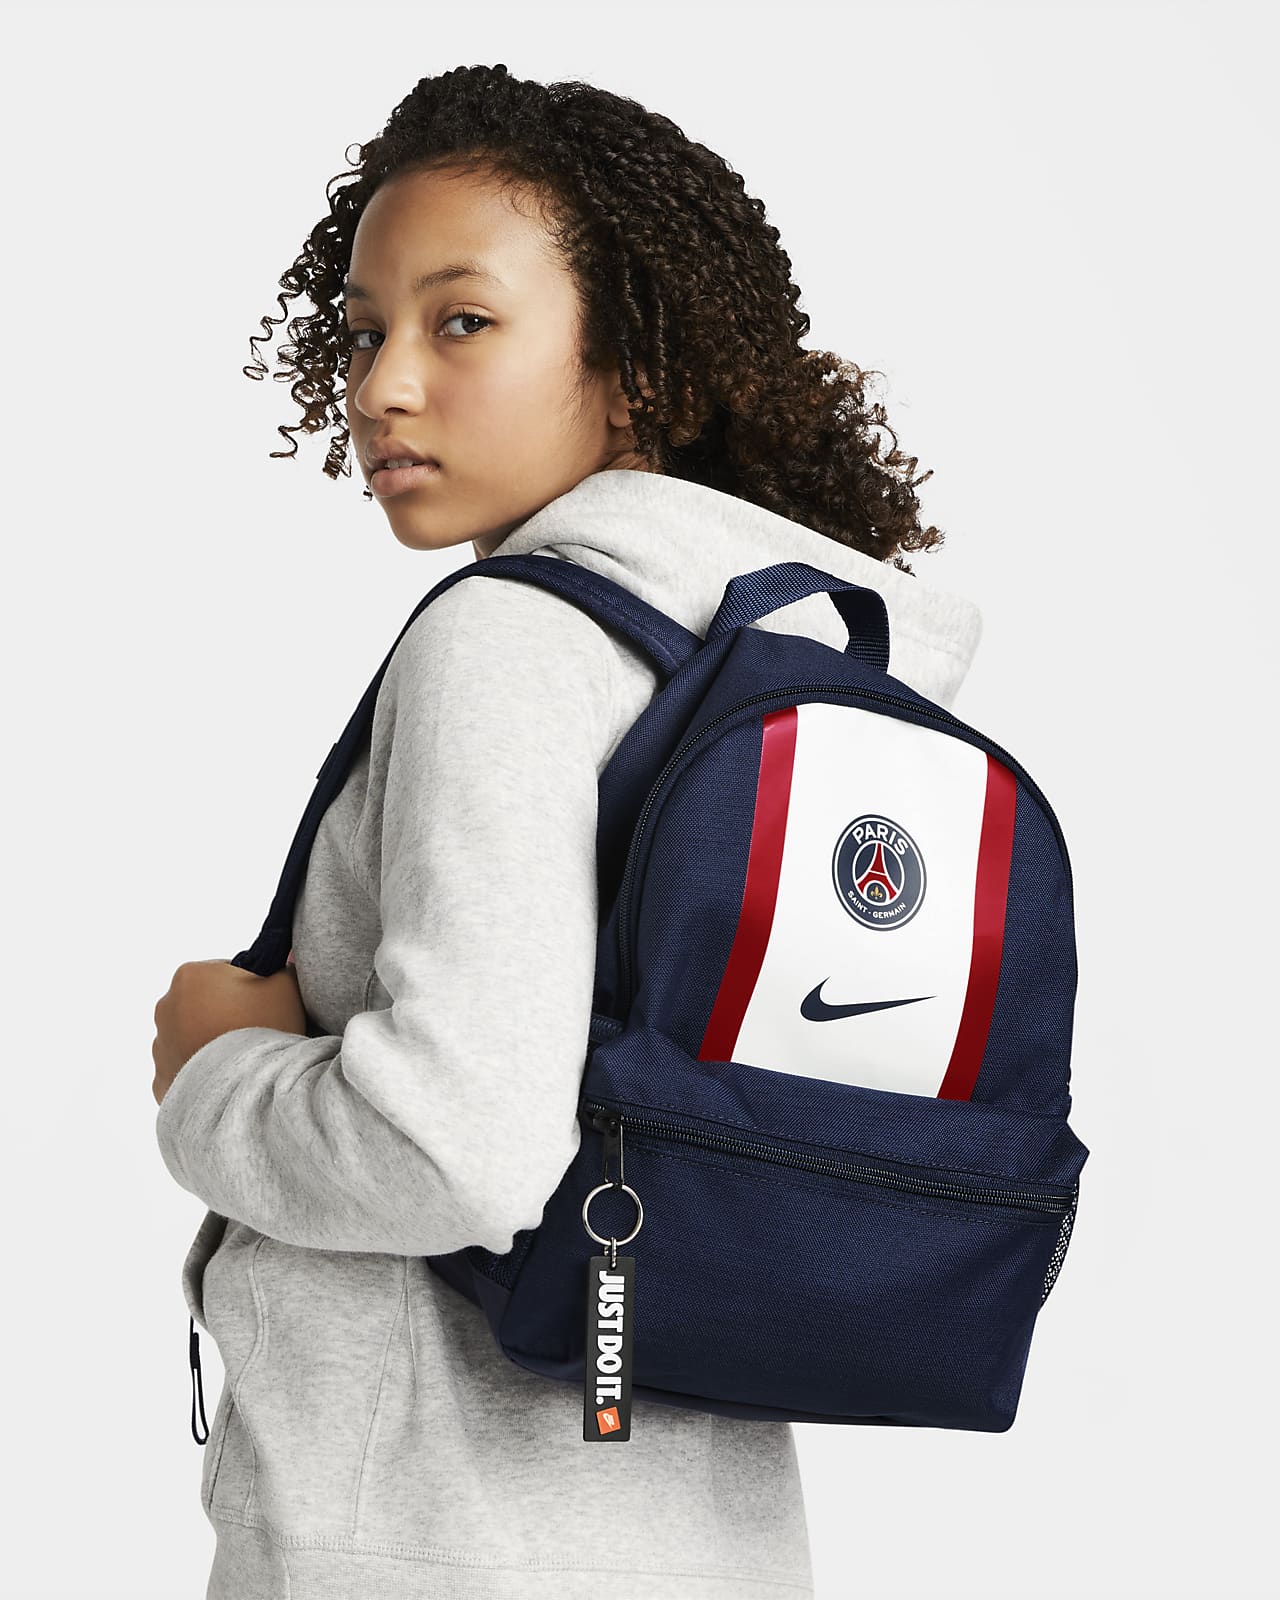 Paris Saint-Germain PSG Bag - Official Collection : Amazon.de: Sports &  Outdoors